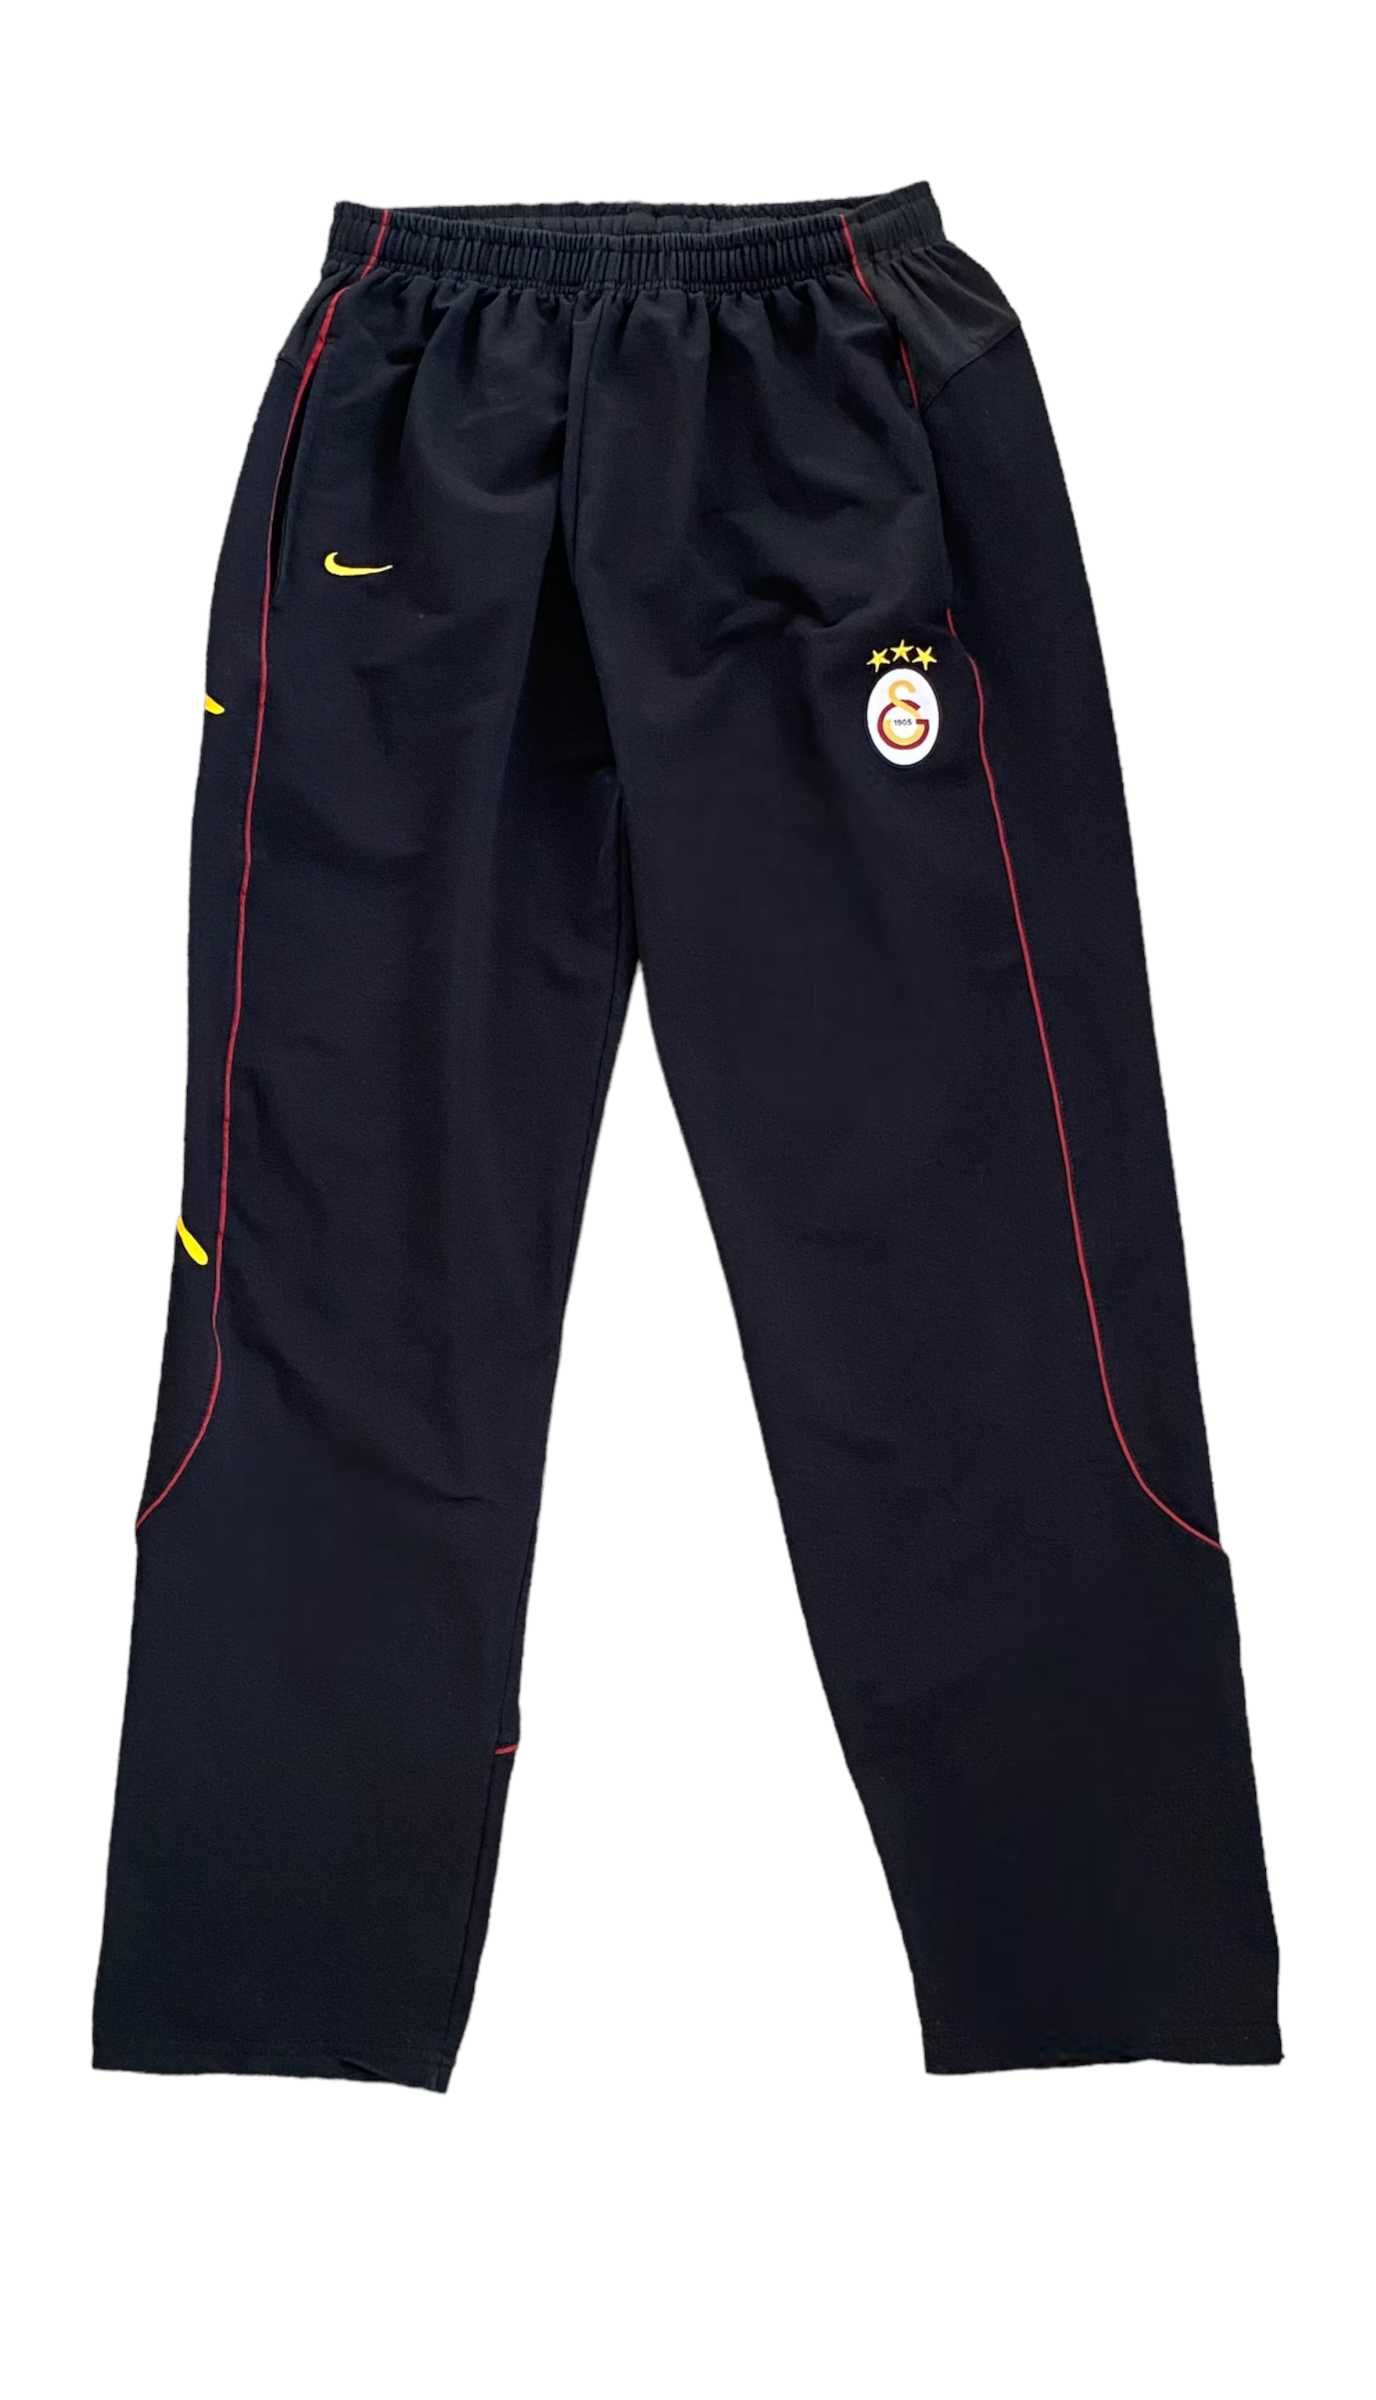 Nike Galatasaray spodnie dresowe, rozmiar XXL, stan bardzo dobry